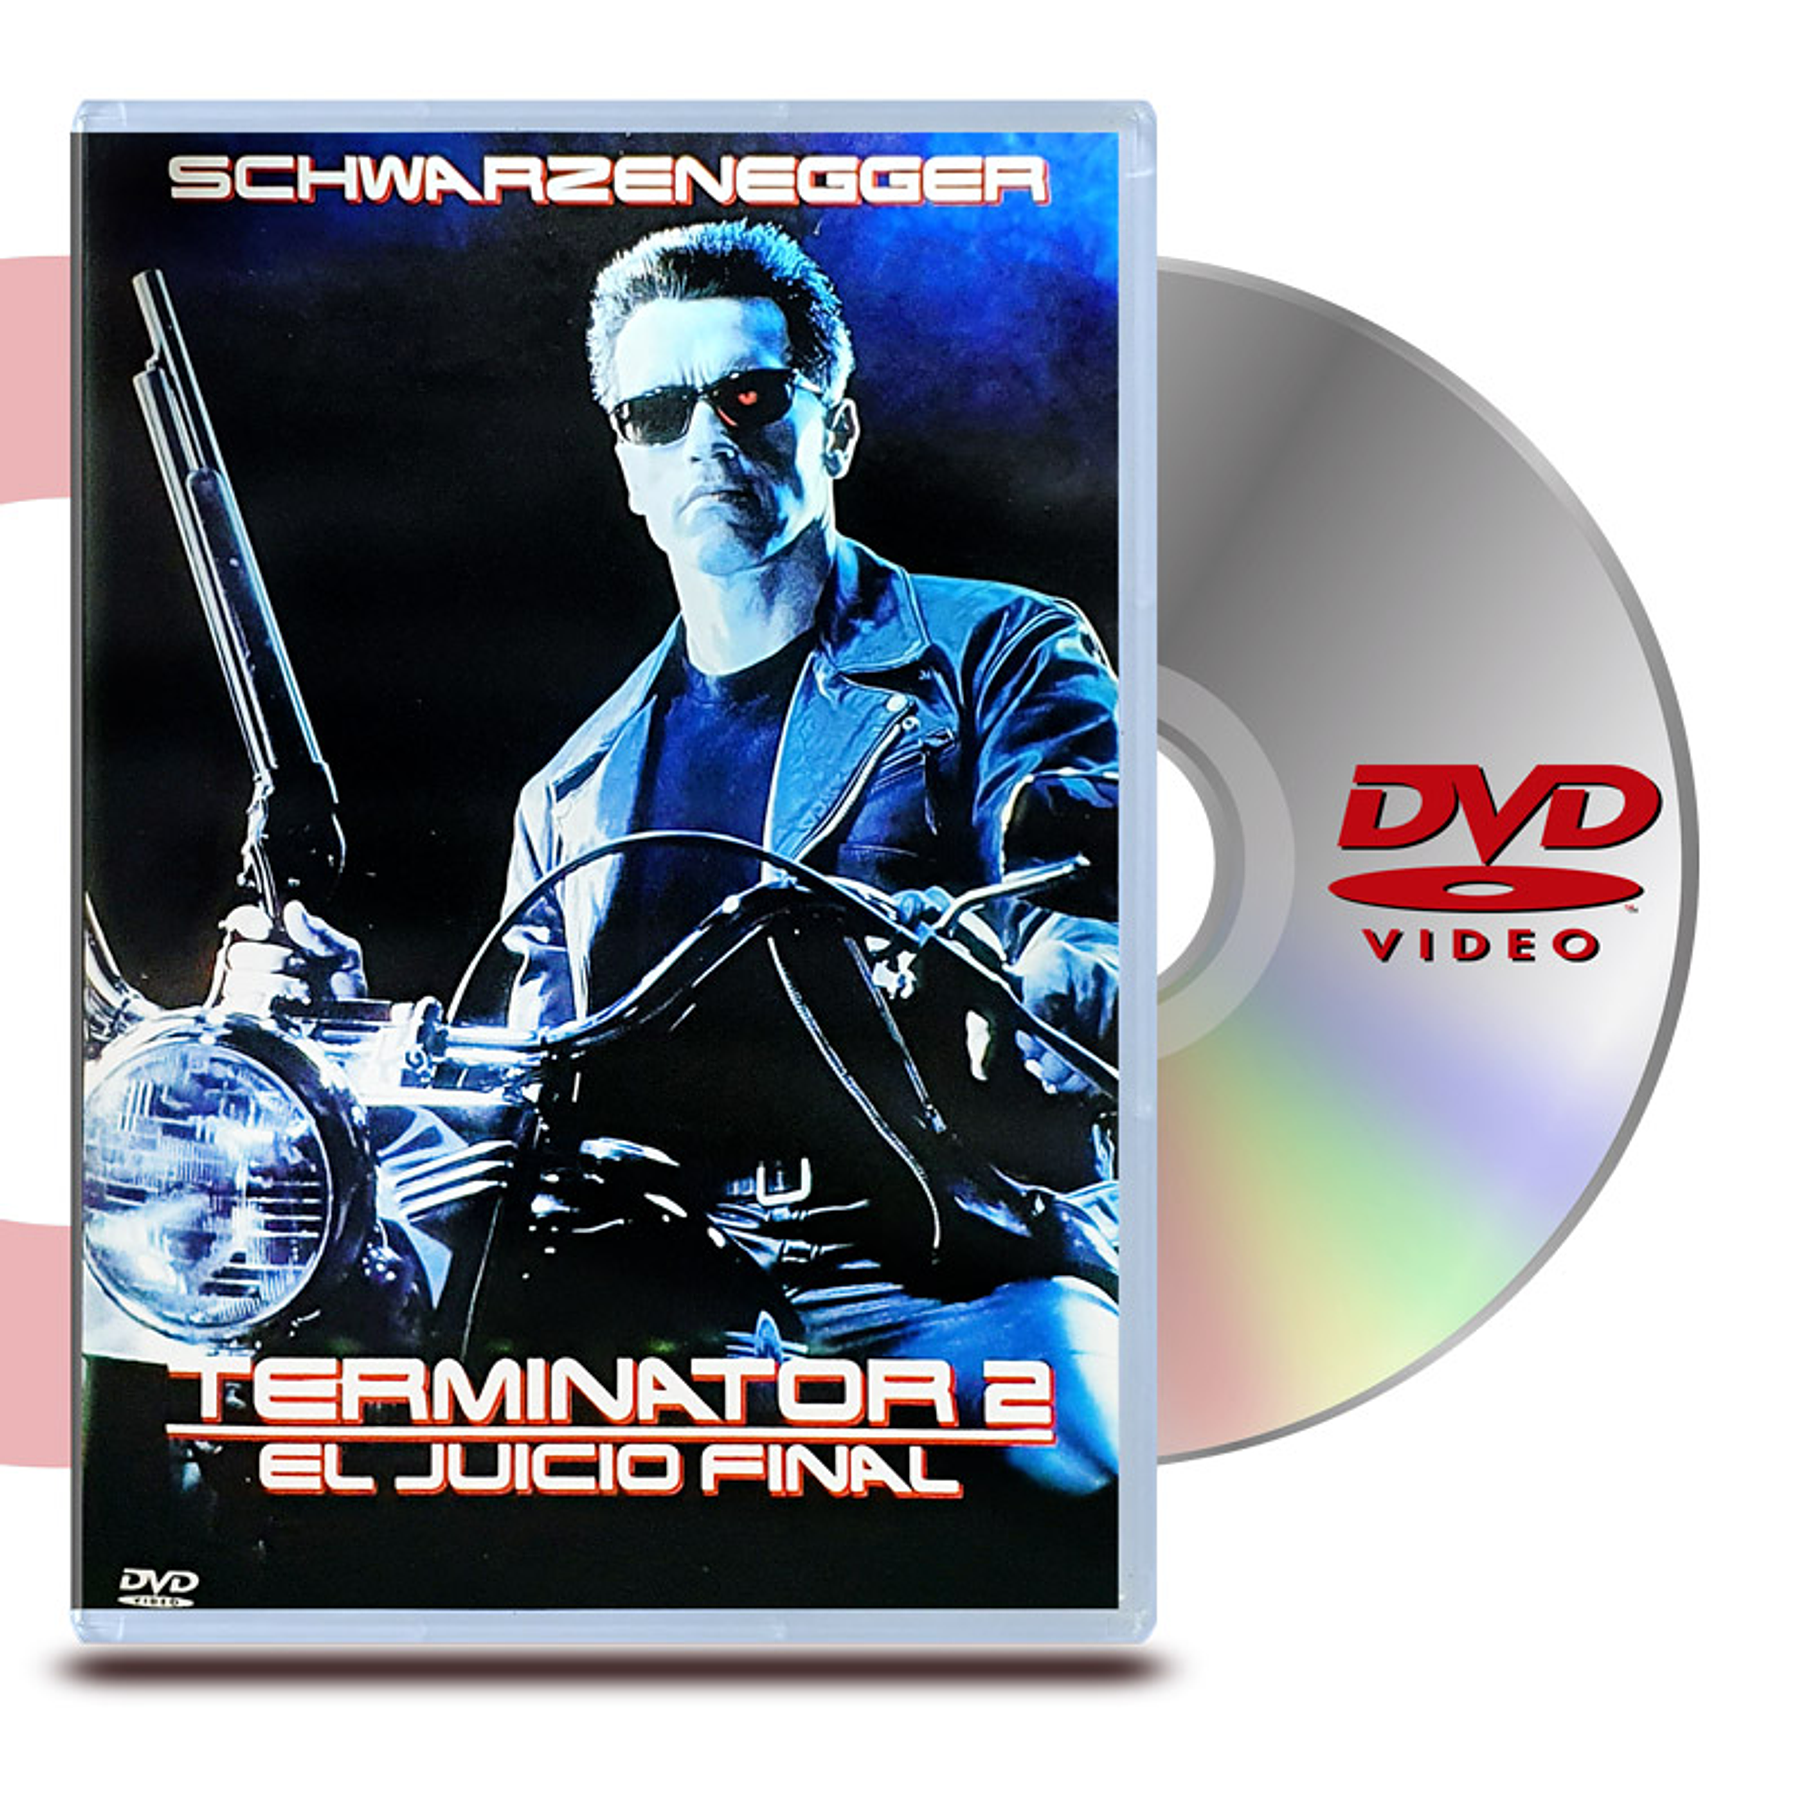 DVD TERMINATOR 2 EL JUICIO FINAL